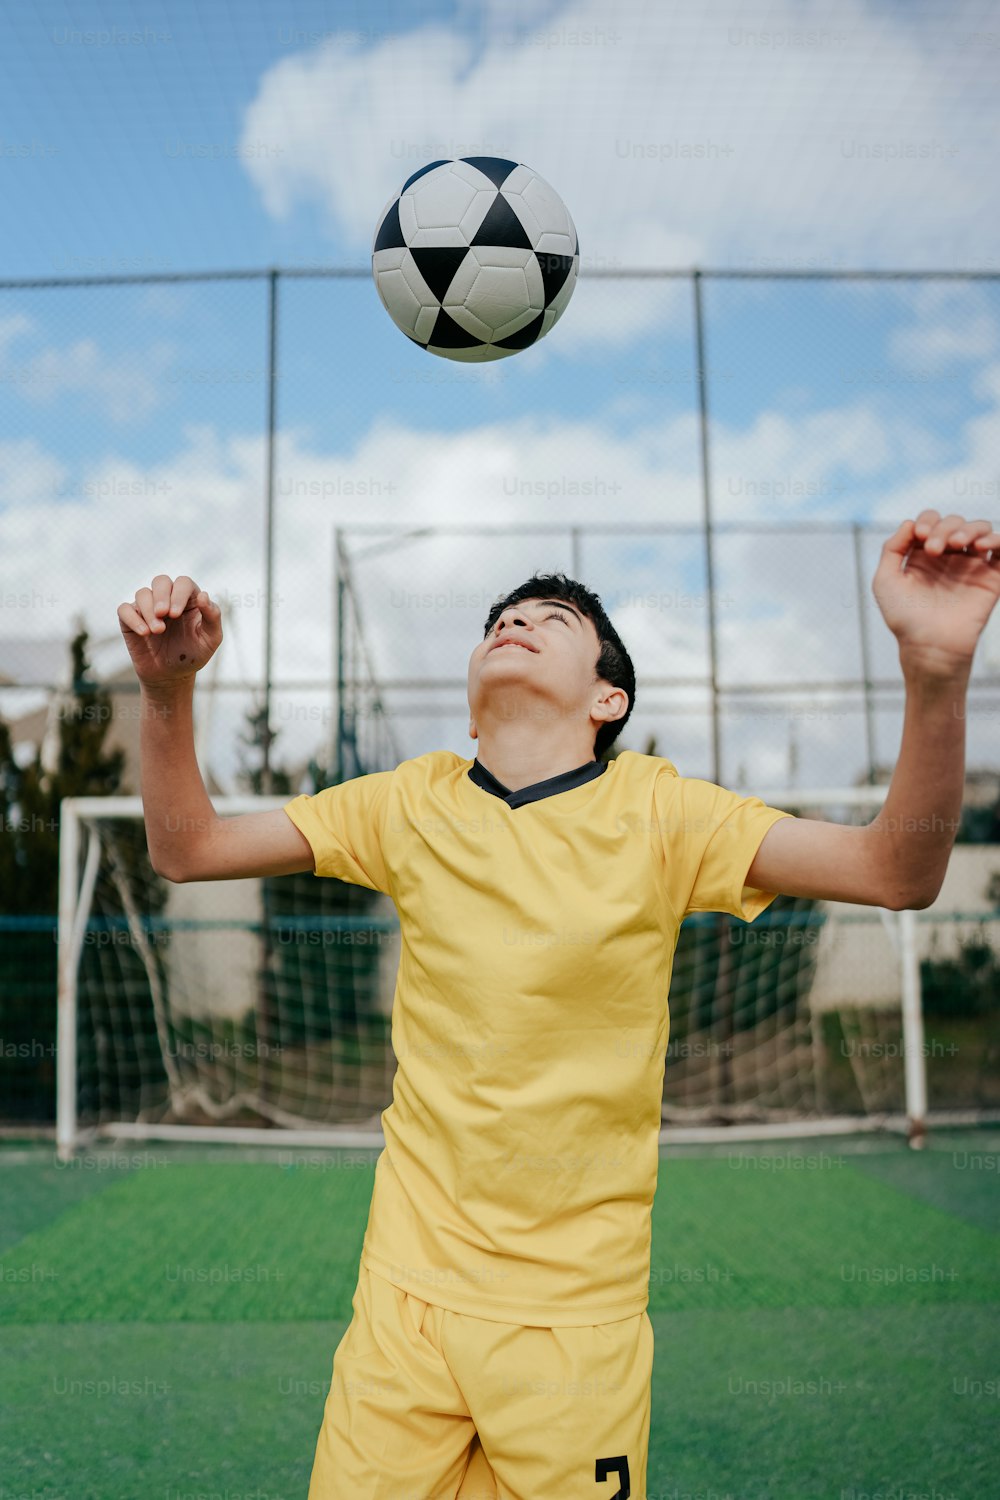 Un jeune homme en uniforme jaune tend la main pour attraper un ballon de soccer